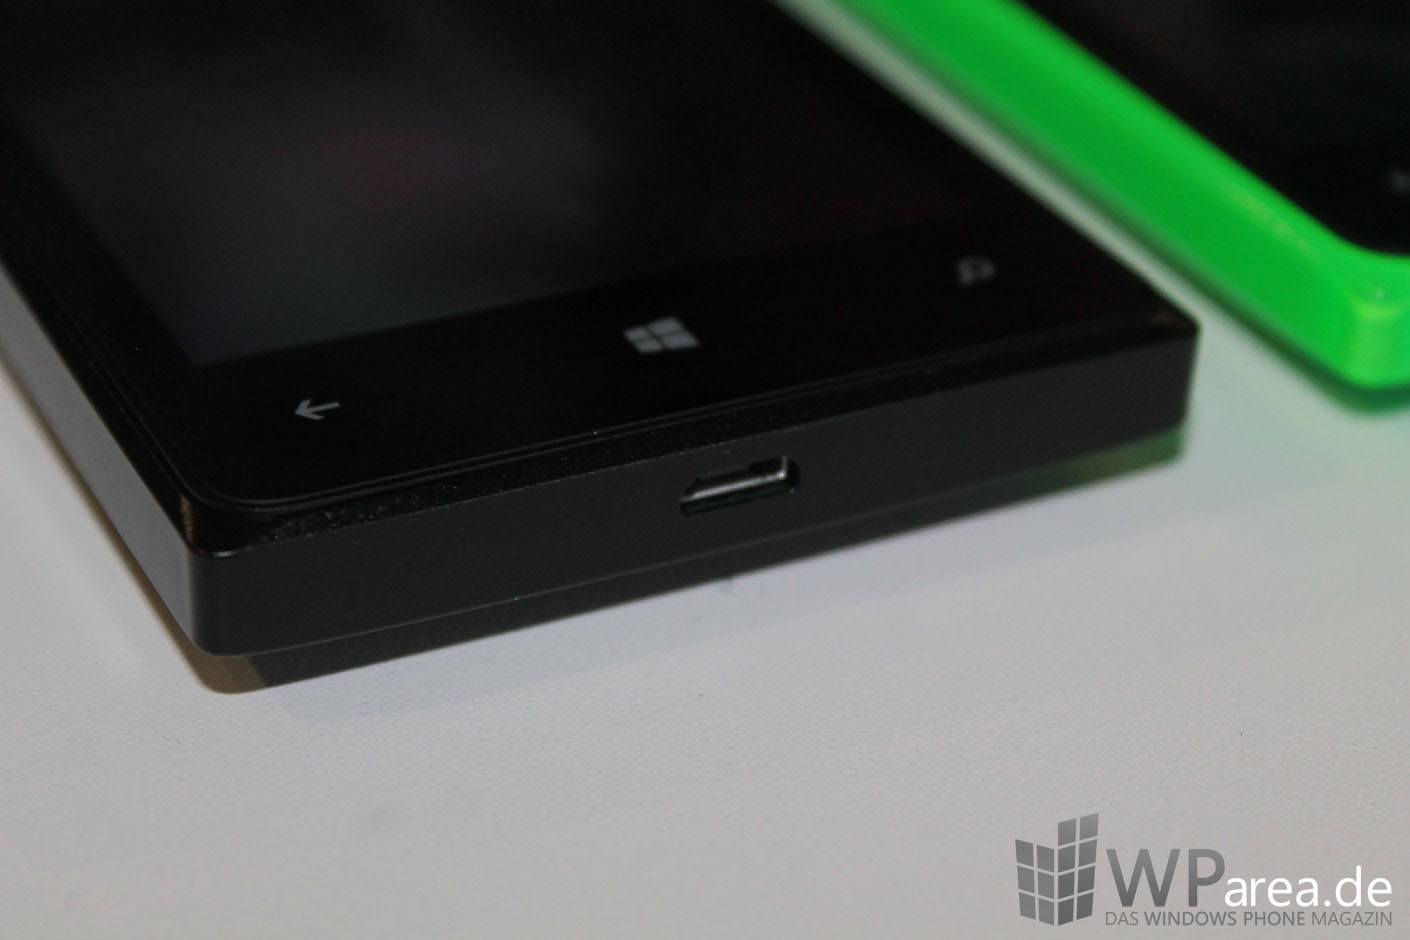 Microsoft Lumia 435 Hands On WParea.de 1